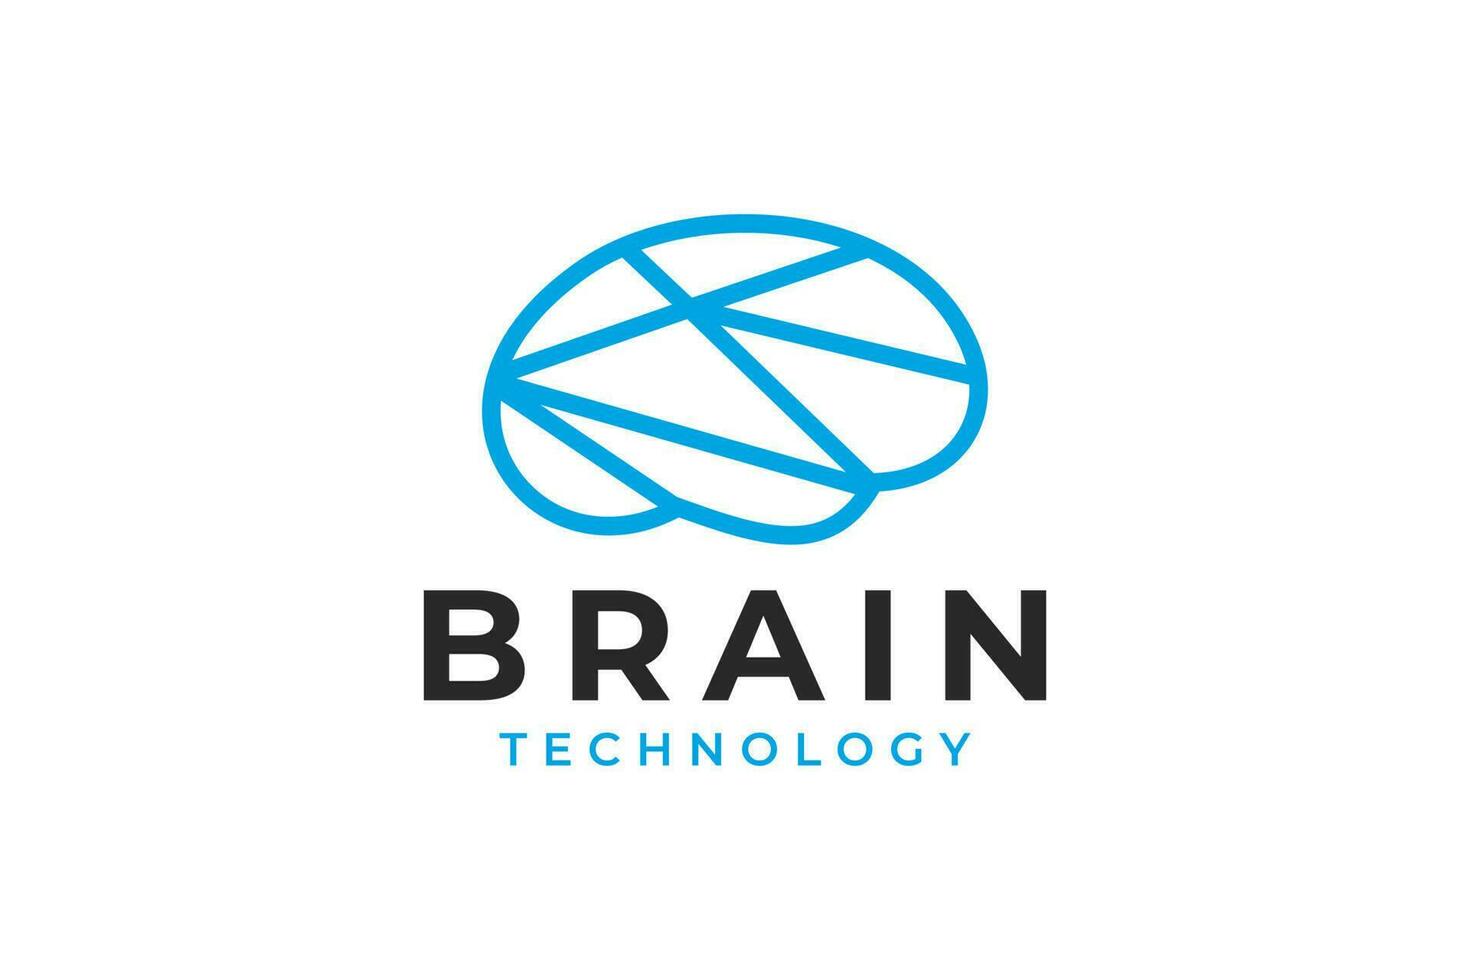 Brain outline line art  logo vector icon.